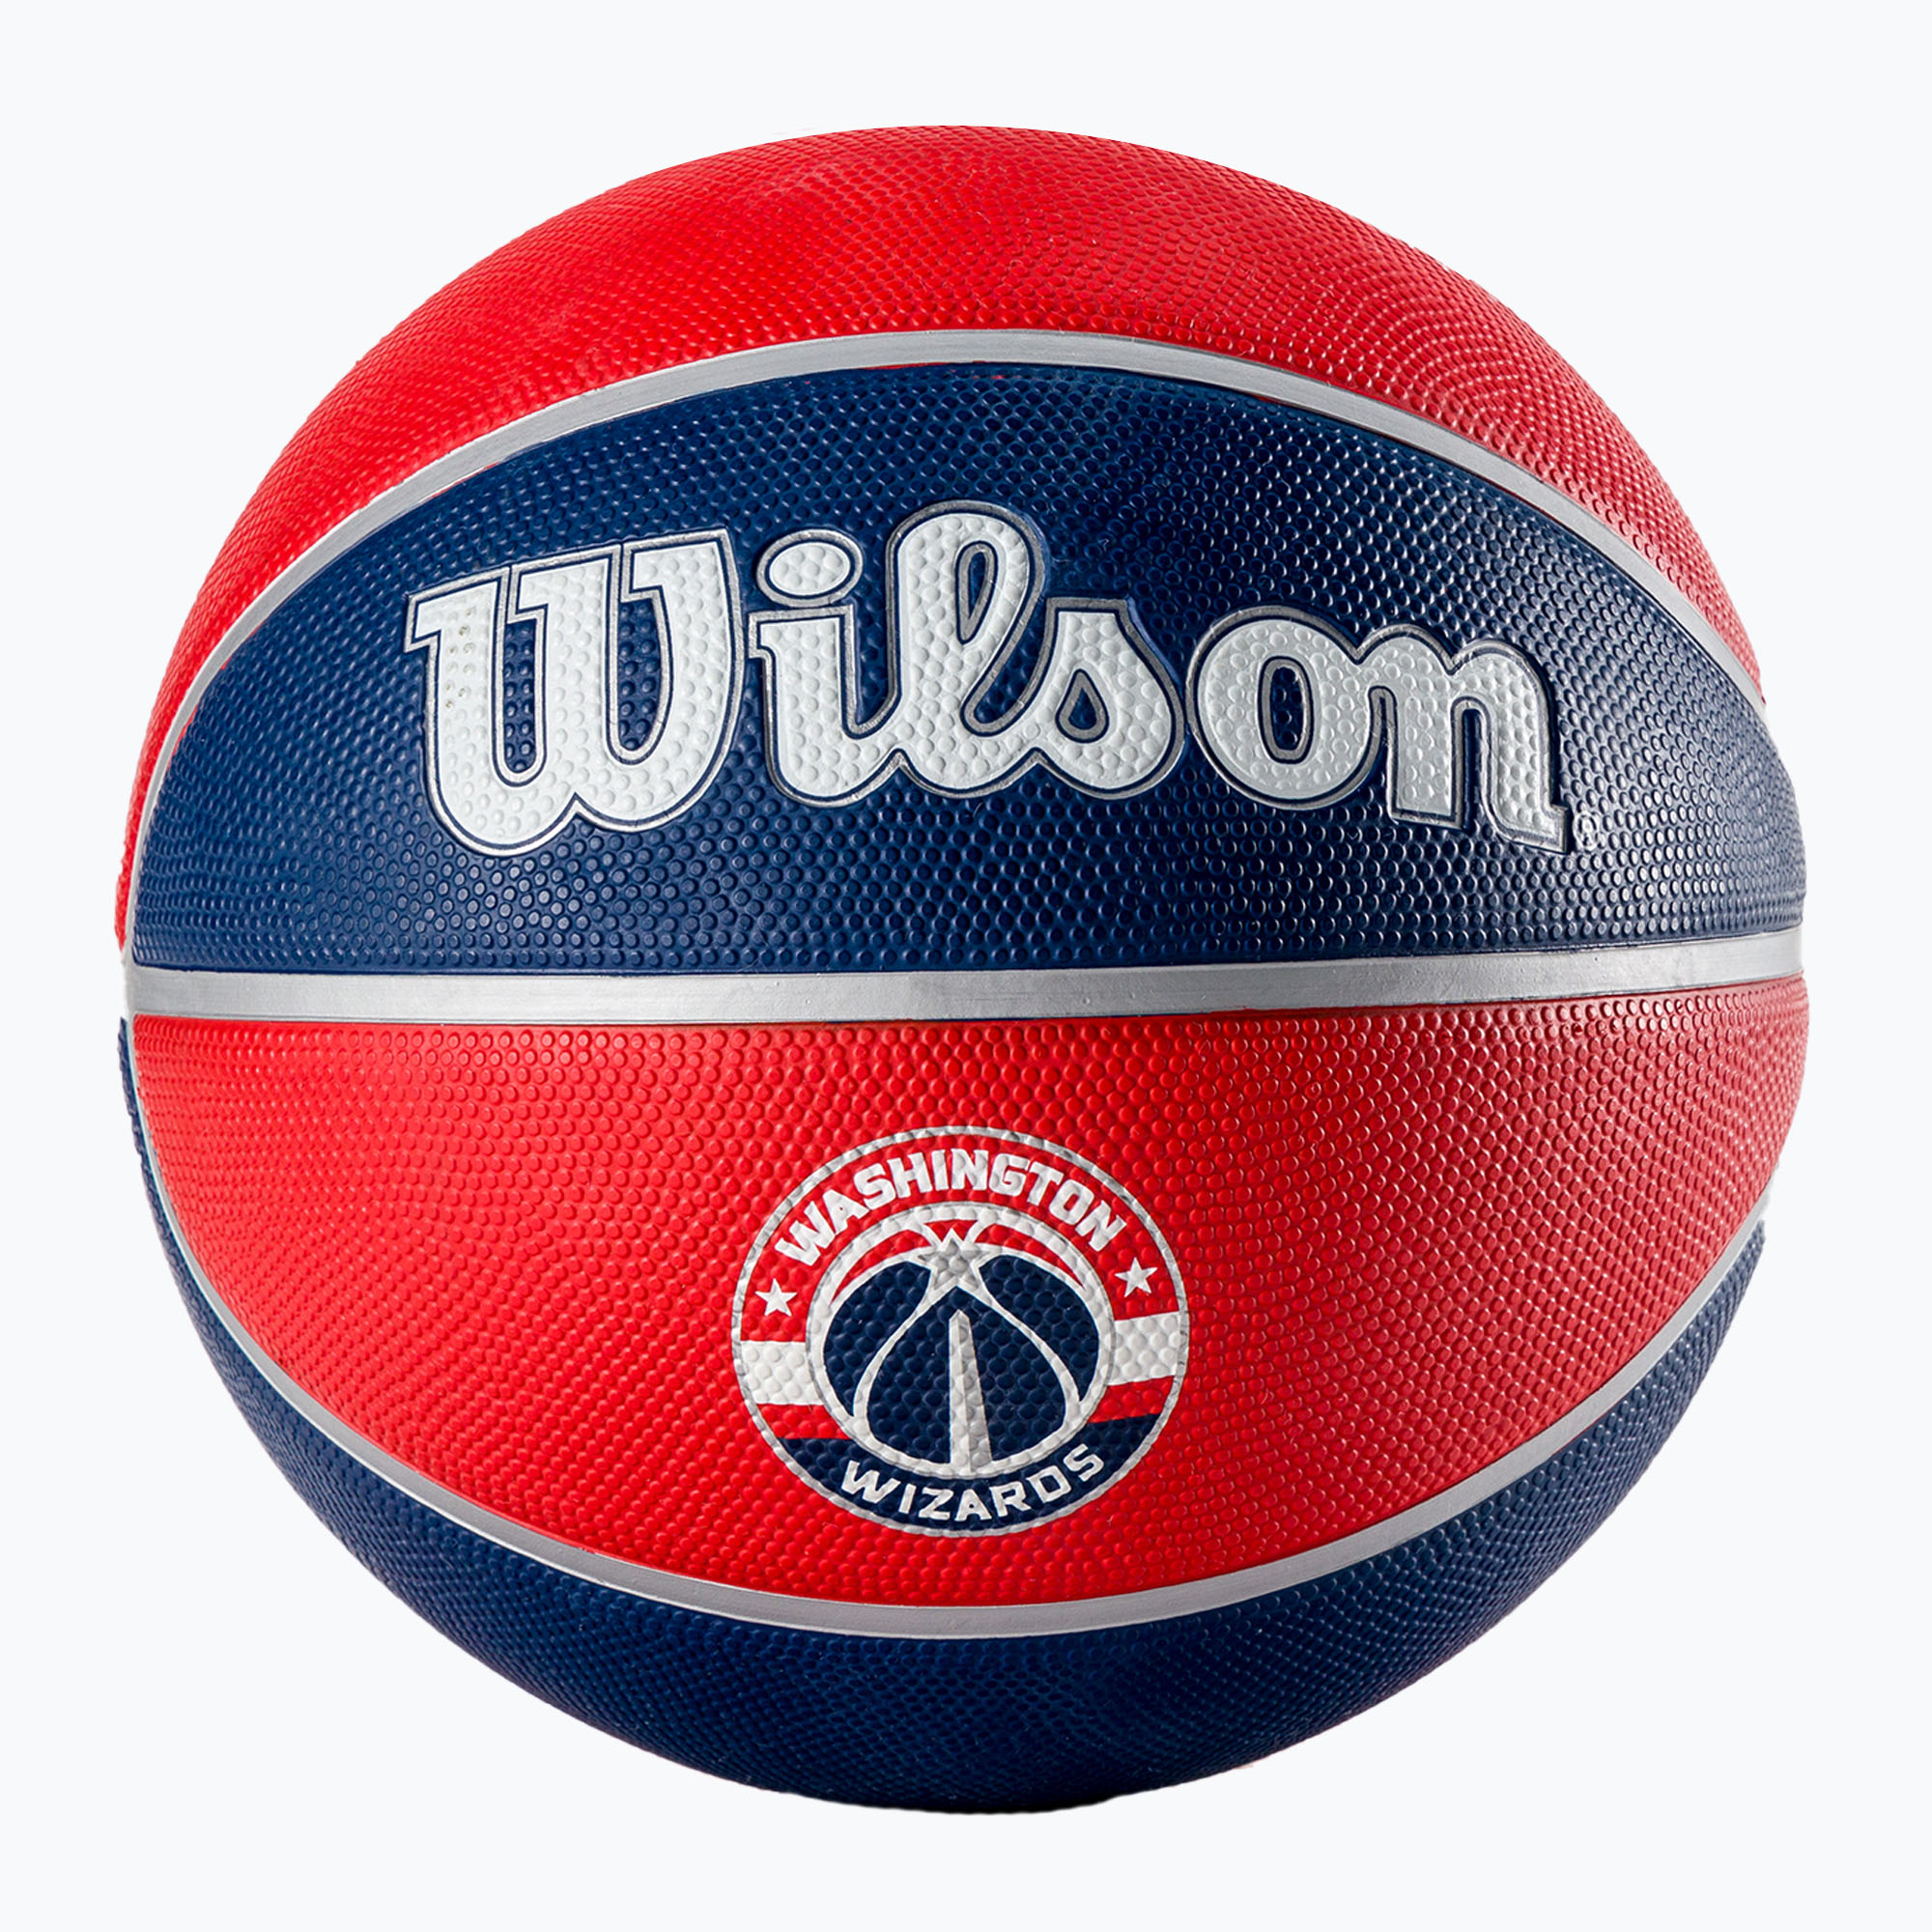 Wilson NBA Team Tribute Washington Wizards basketbalová červená WTB1300XBWAS veľkosť 7